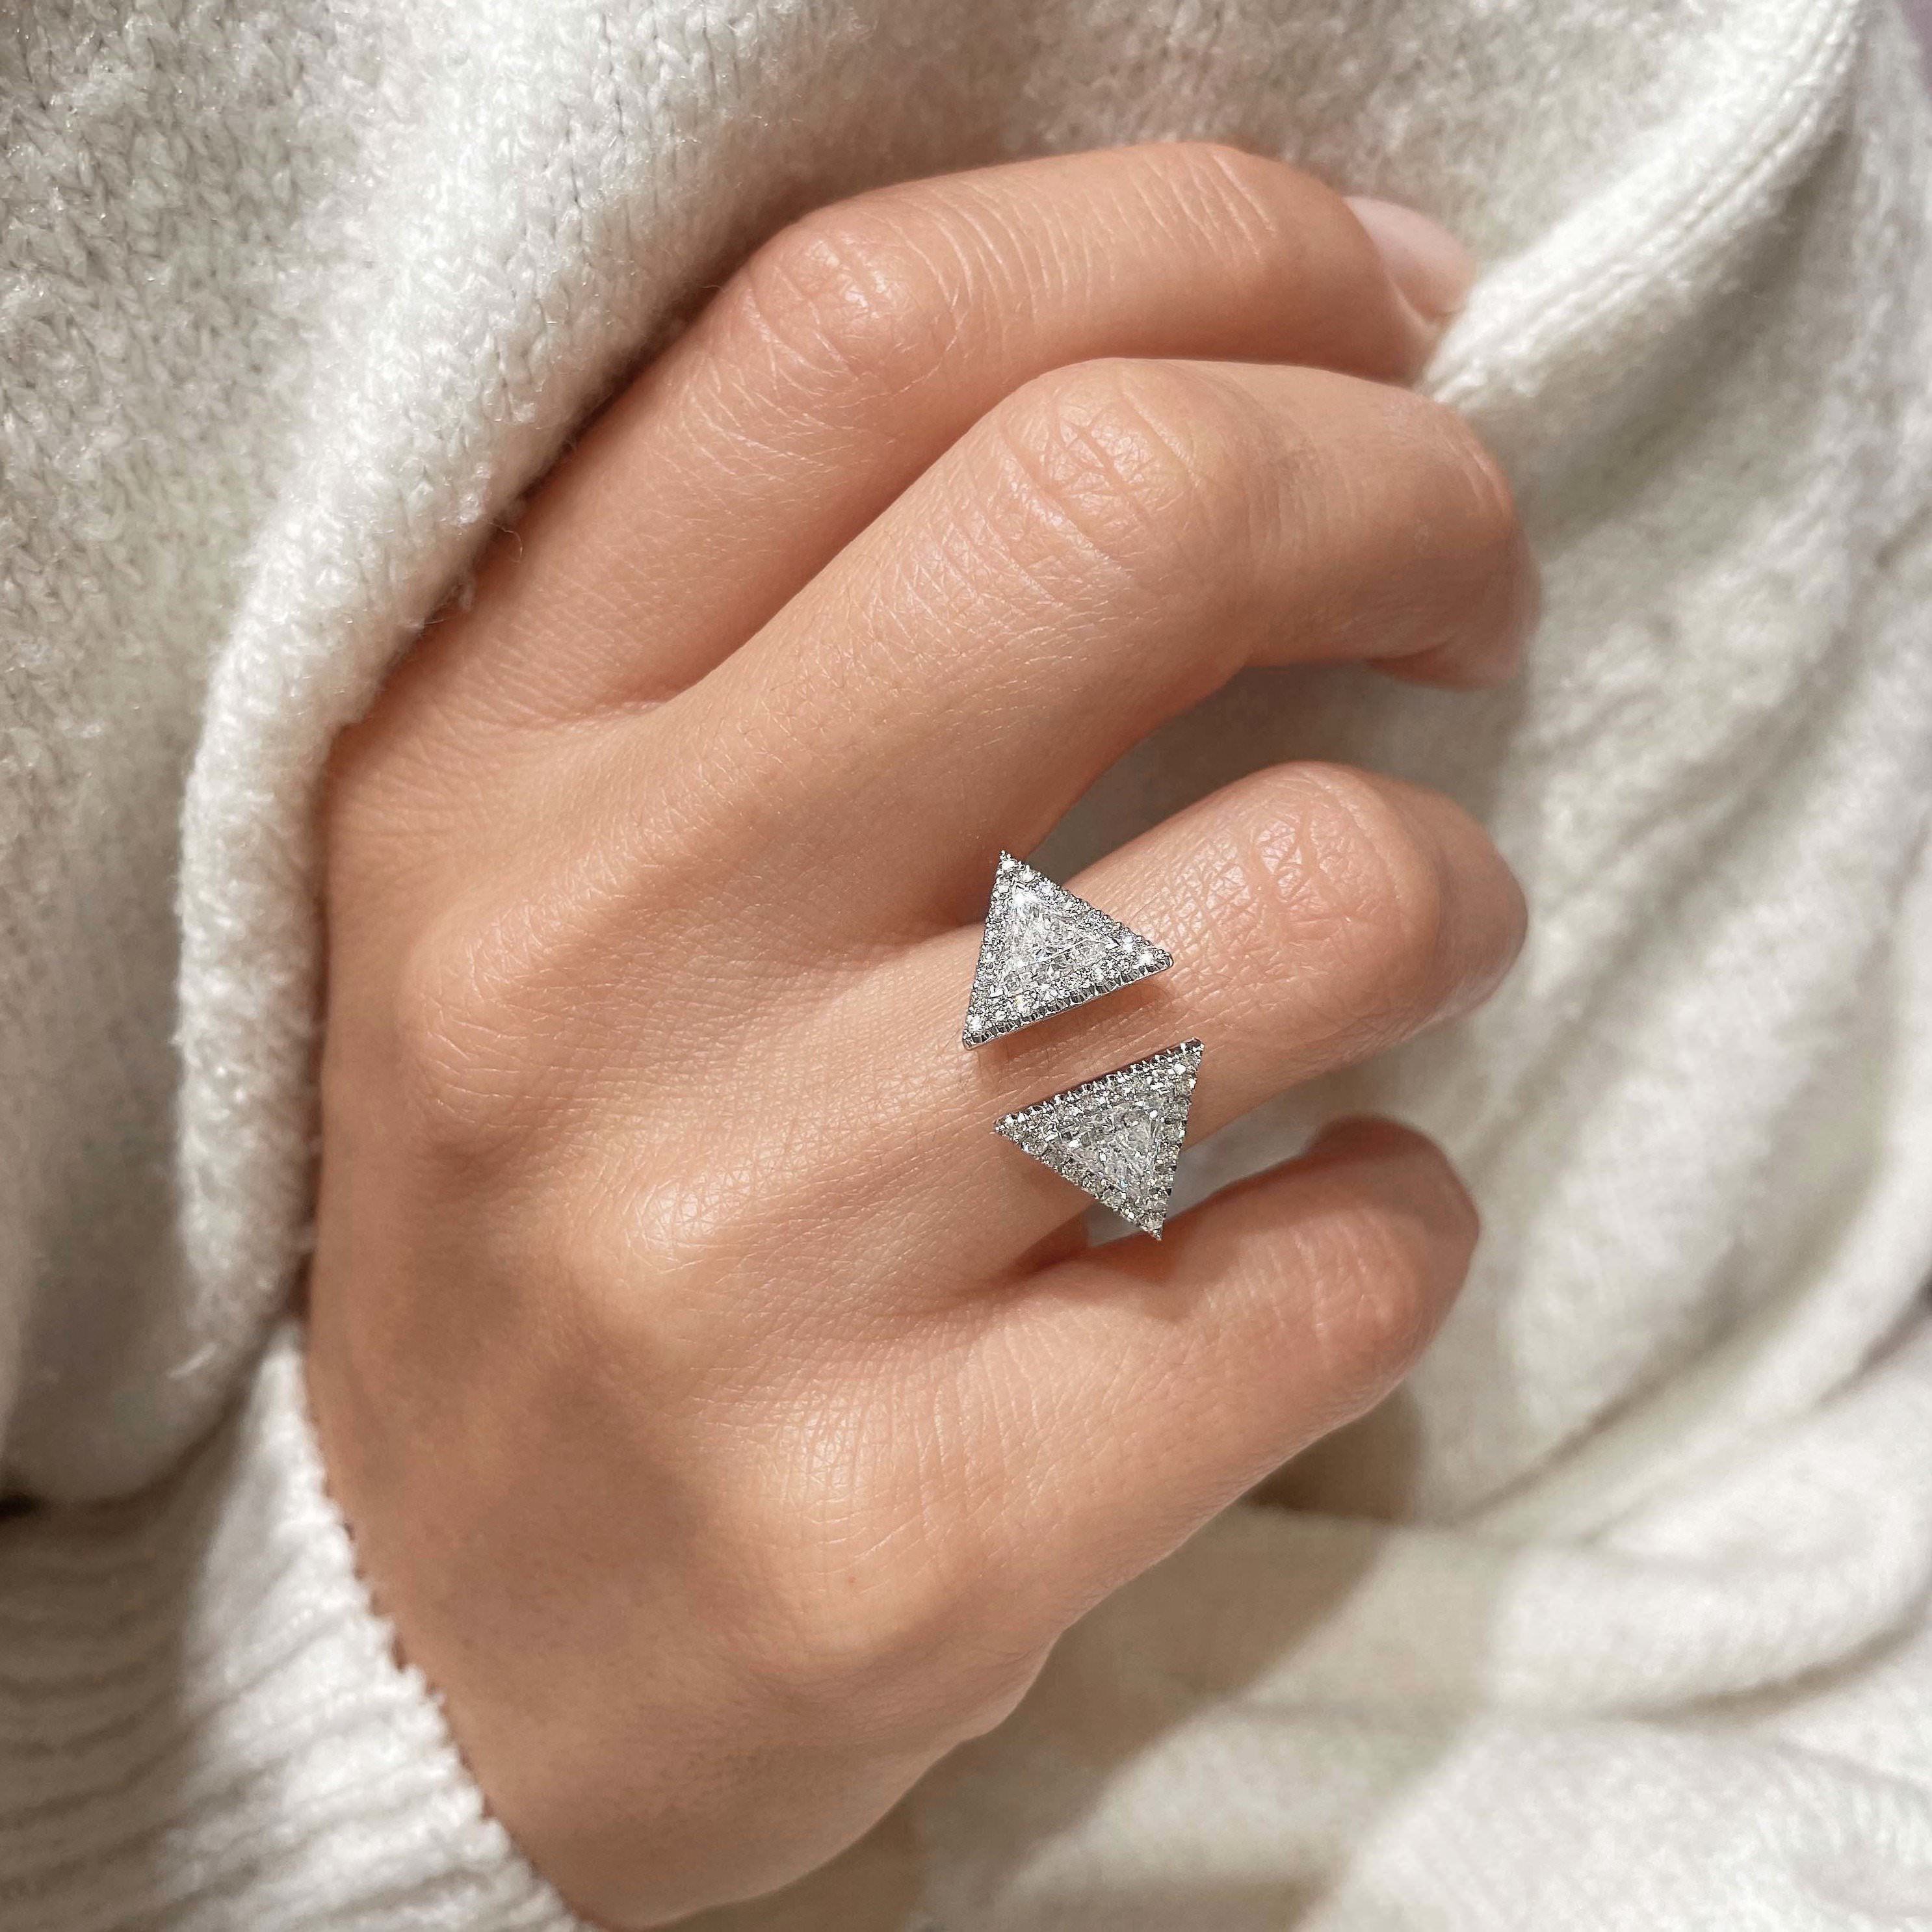 Jade Fashion Diamond Ring   (1.5 carat) -18K White Gold